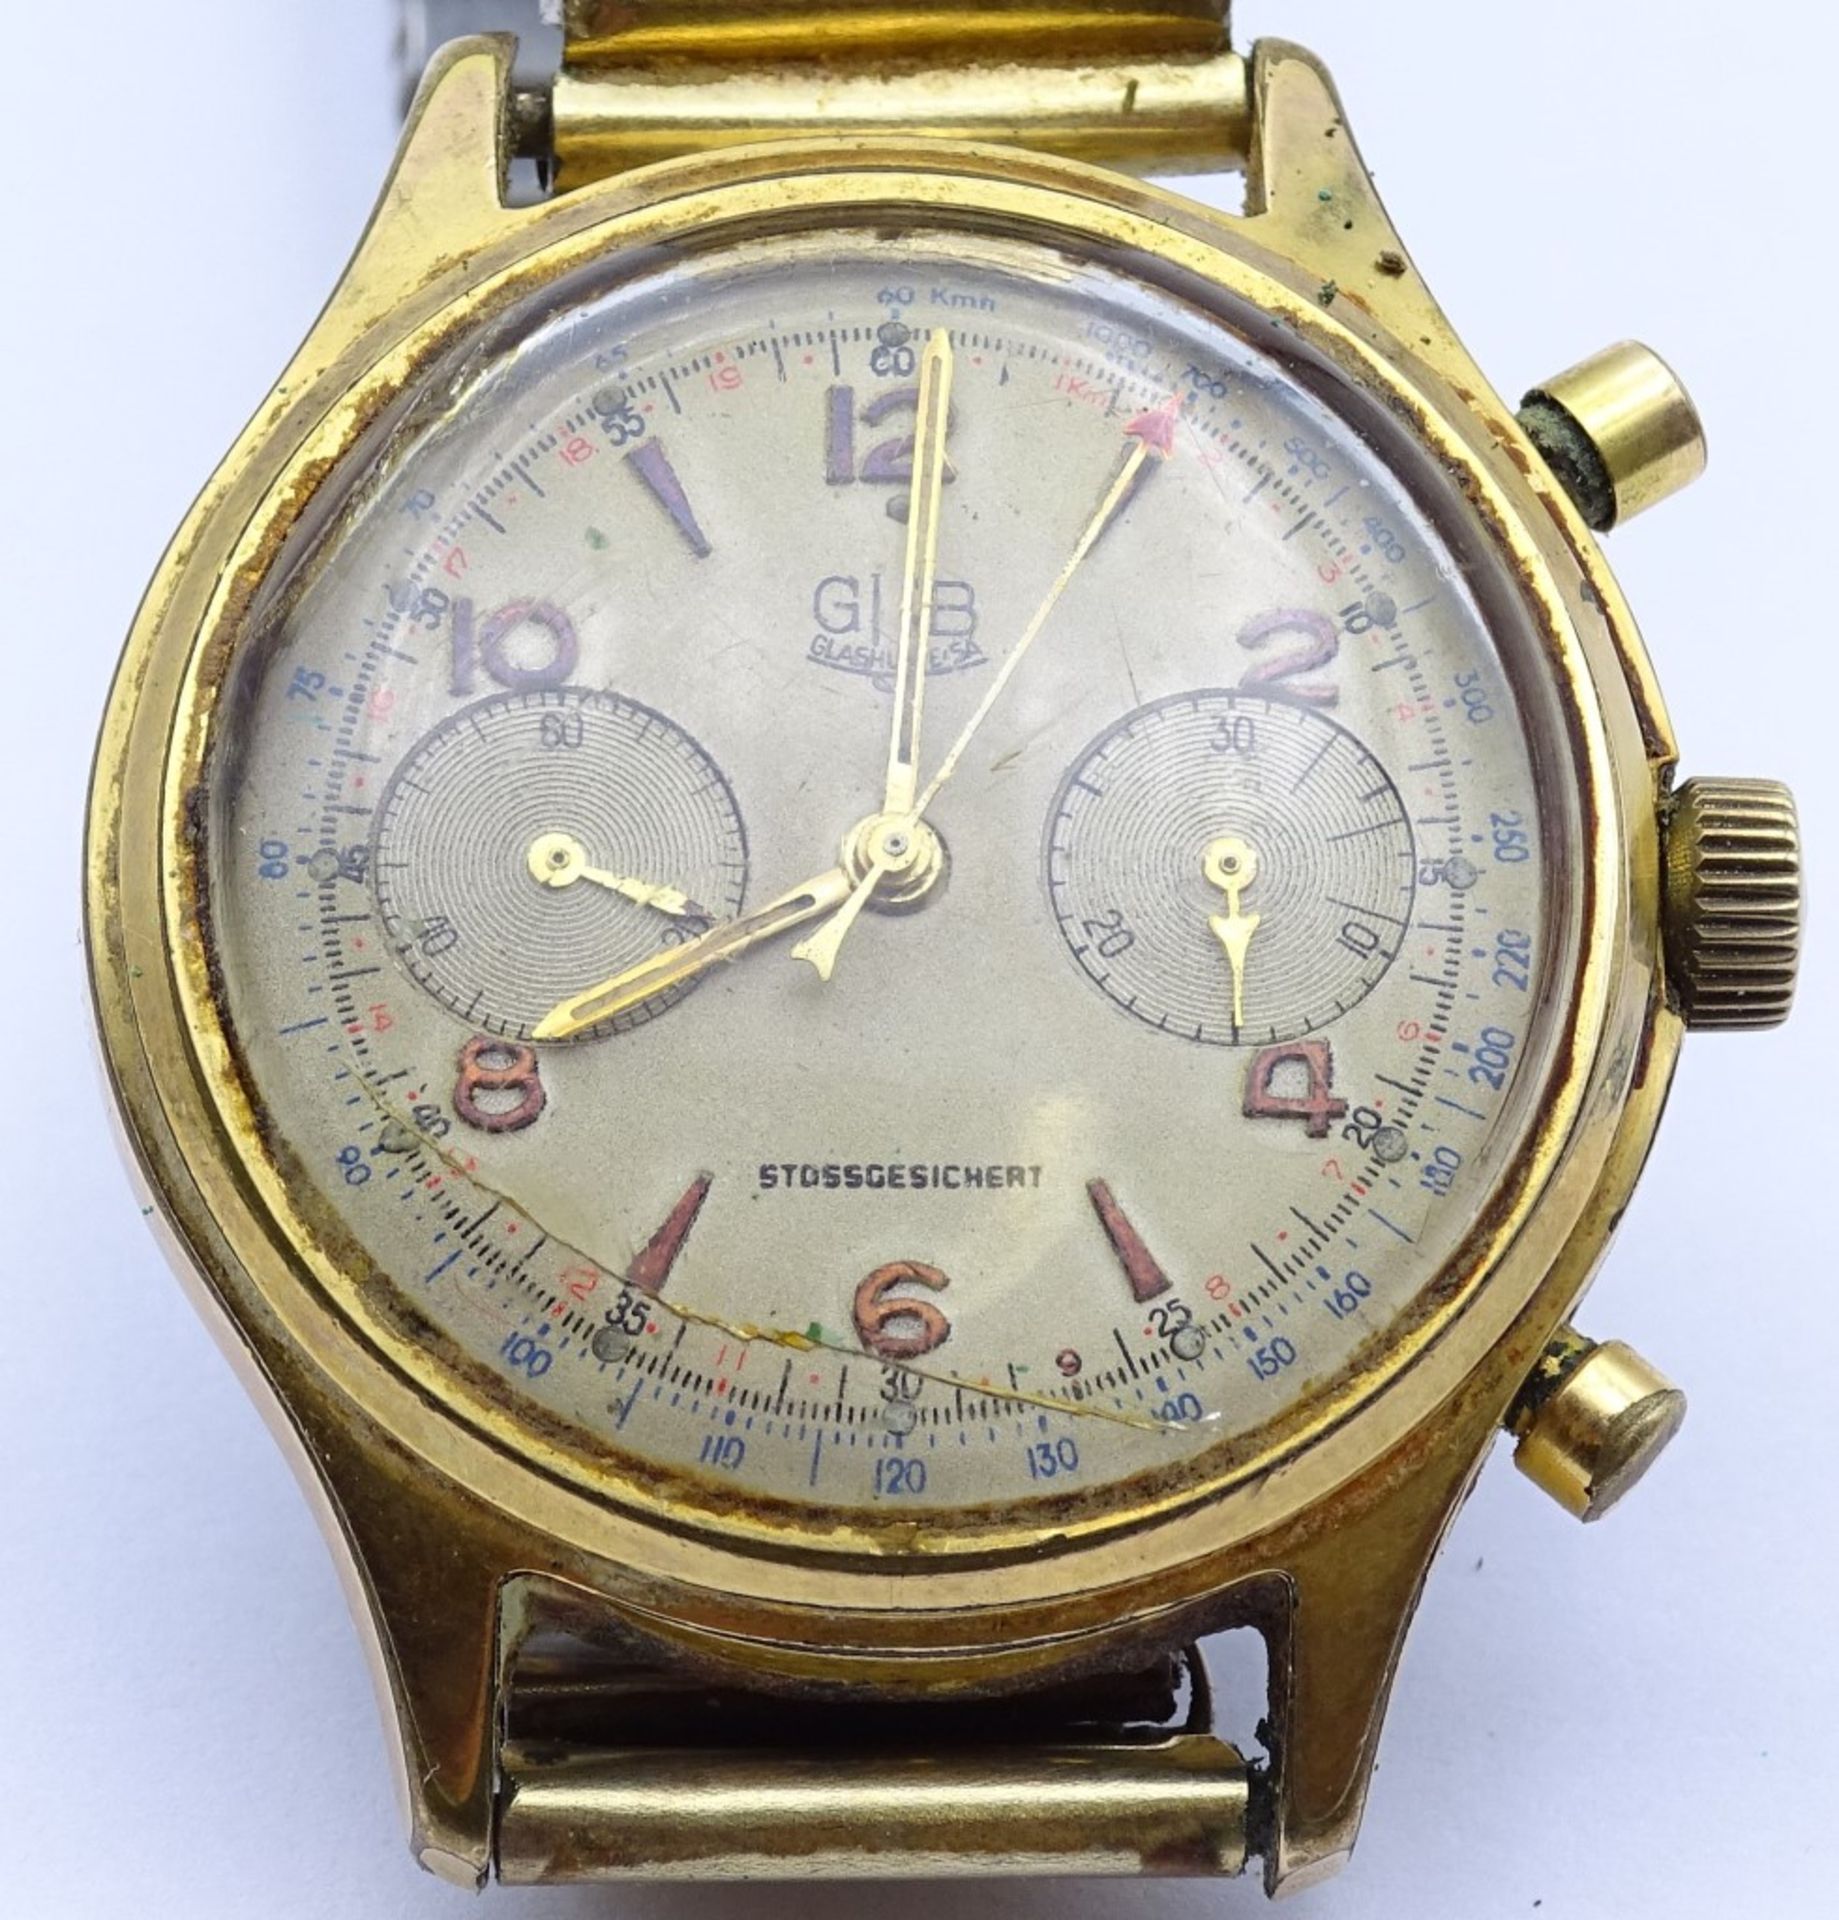 Zwei Armbanduhren "GUB",beide mechanisch,Werke laufen,vergoldet,Alters-u. Gebrauchsspuren, d-33- - Bild 7 aus 9